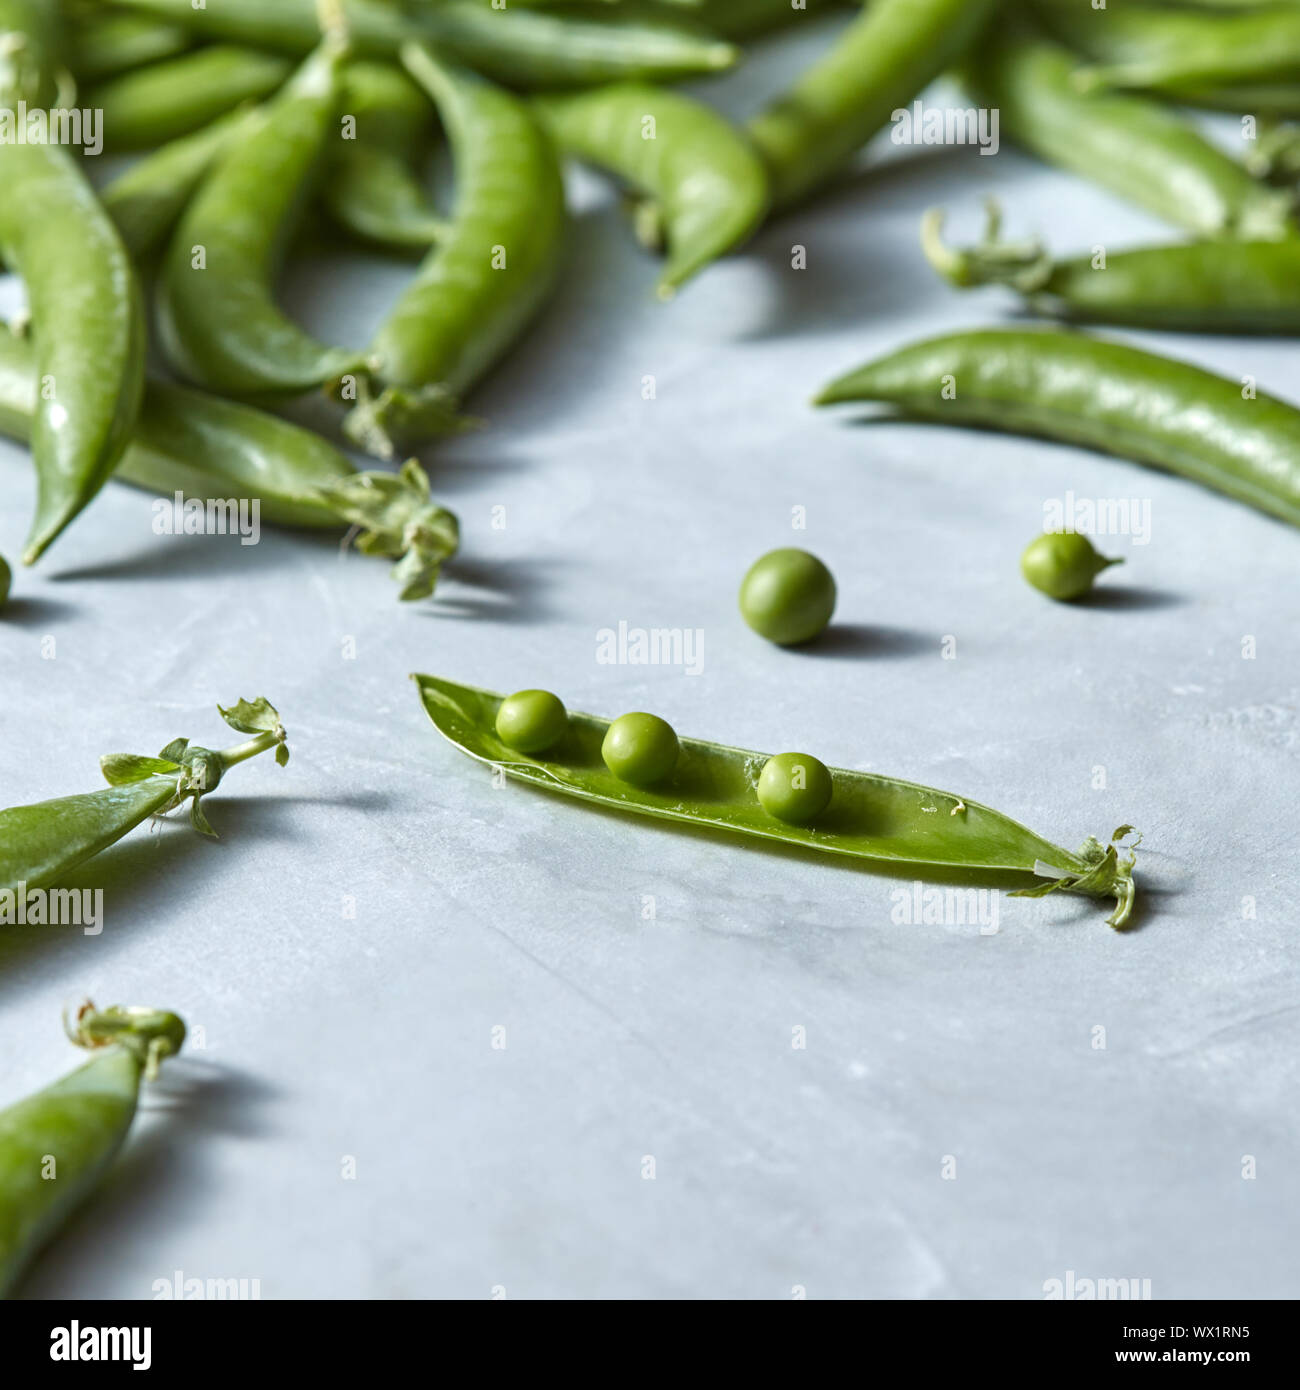 Organici naturali di piselli con baccelli di piselli verdi aperto su uno sfondo grigio. Foto Stock